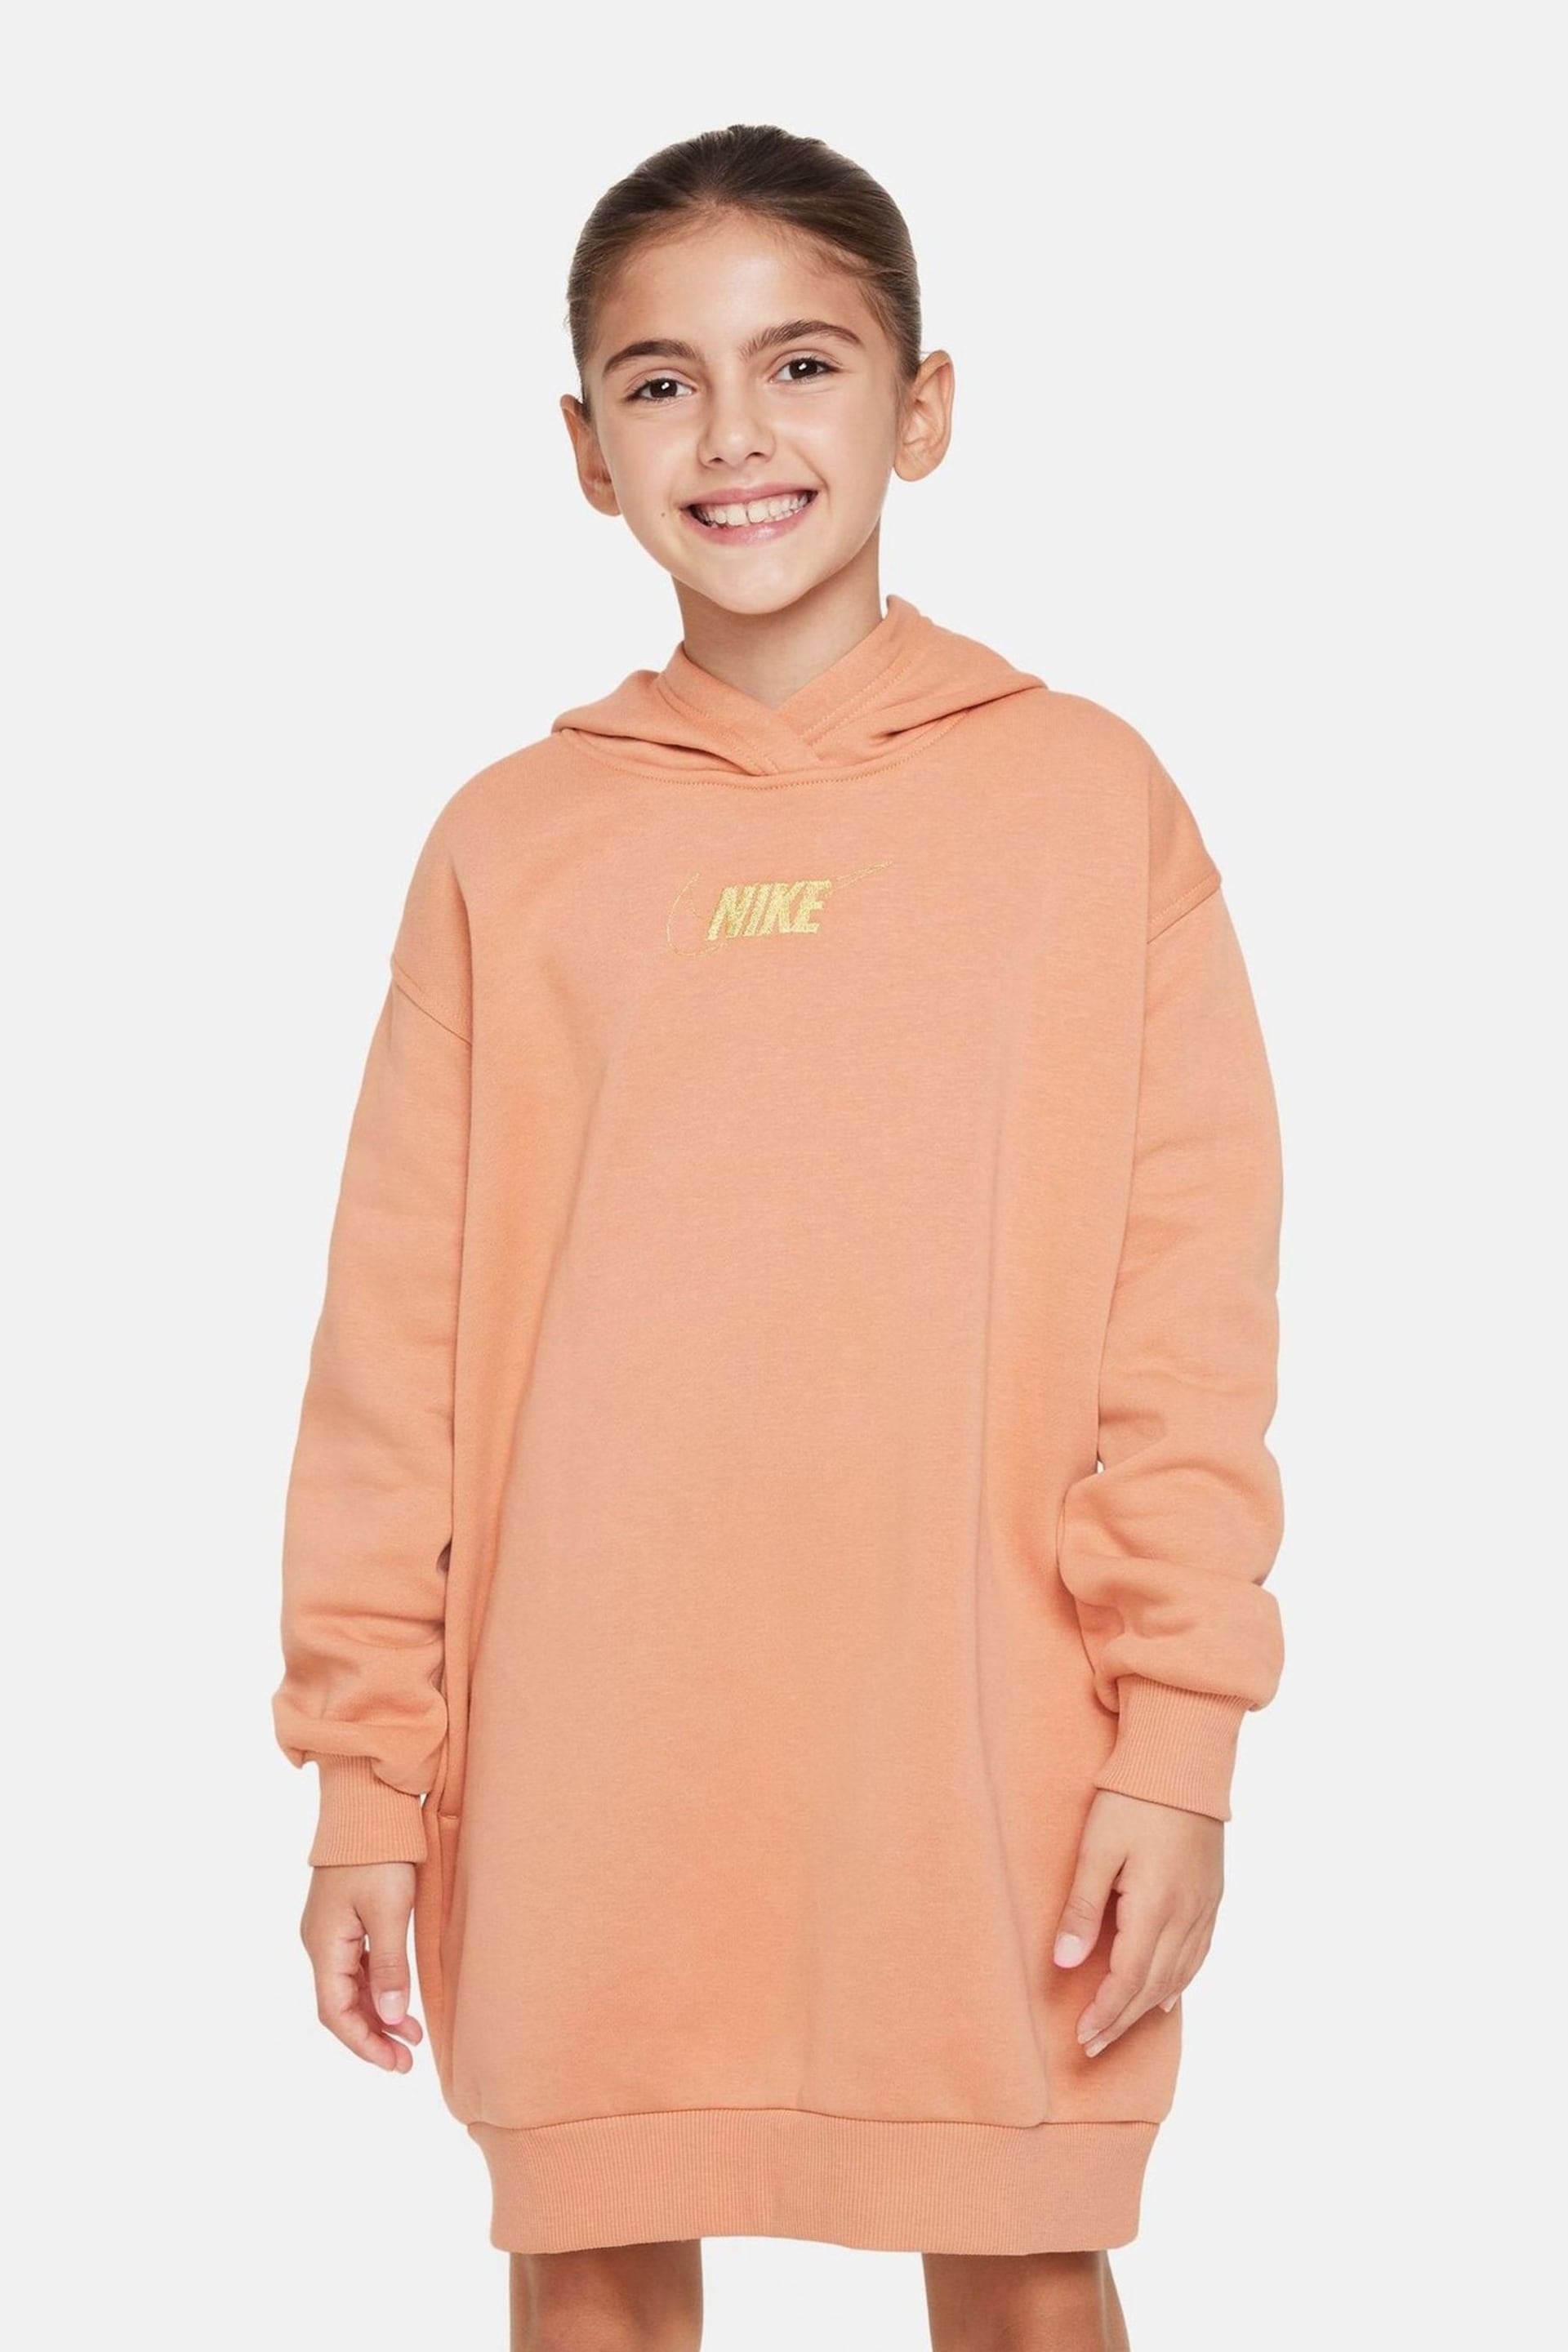 Nike Orange/Gold Shine Fleece Long Line Hoodie - Image 1 of 5